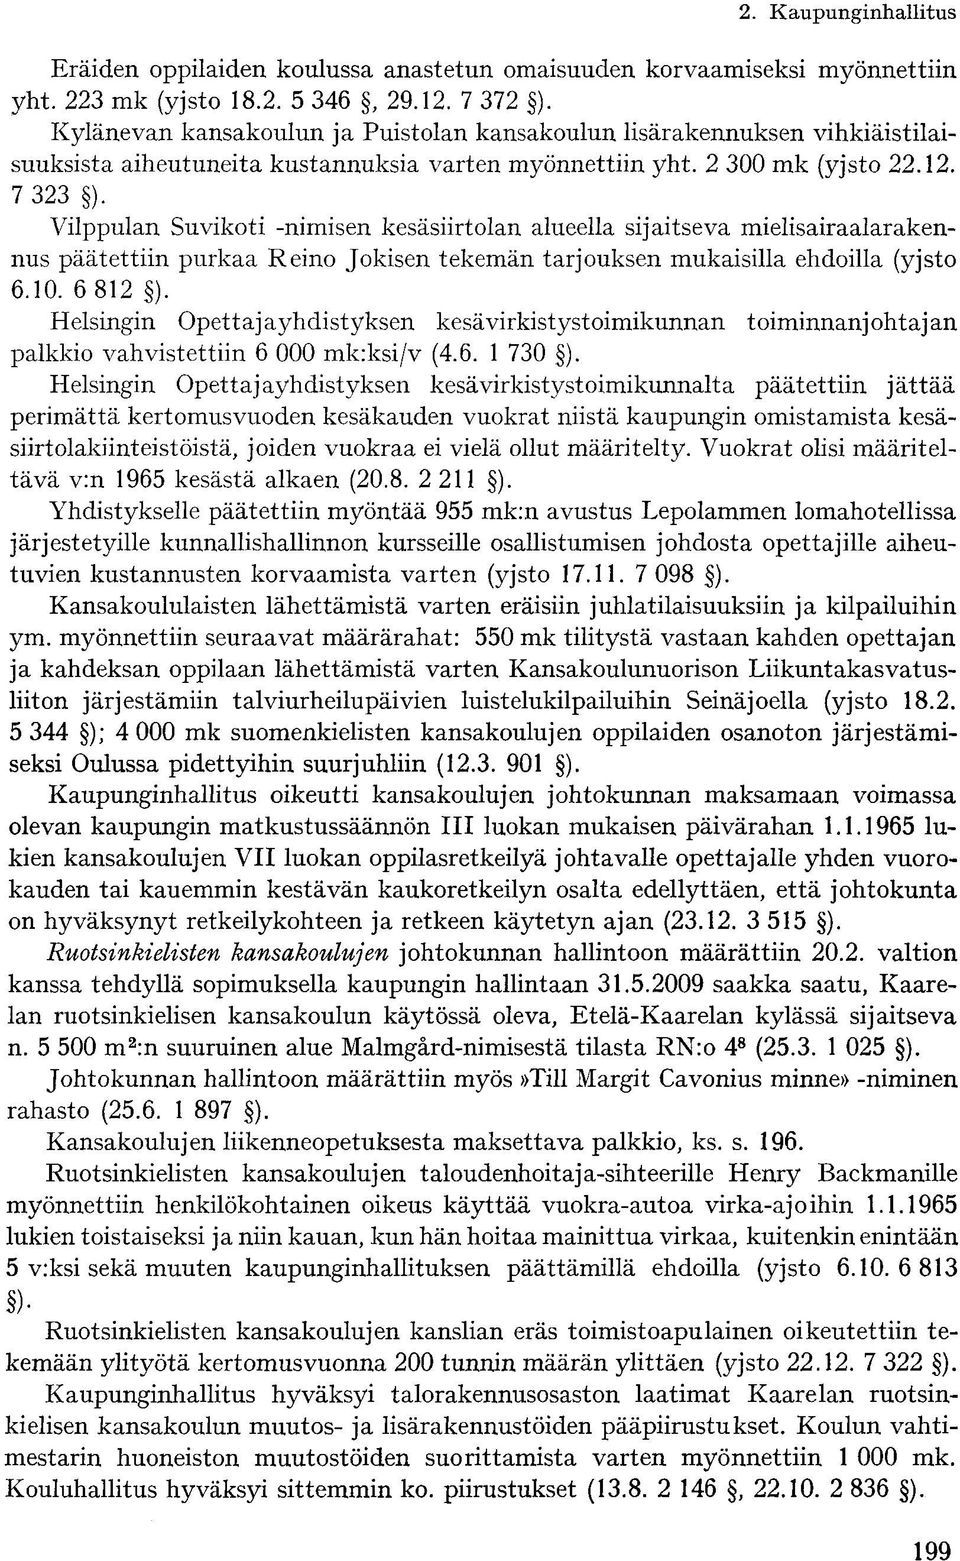 Vilppulan Suvikoti -nimisen kesäsiirtolan alueella sijaitseva mielisairaalarakennus päätettiin purkaa Reino Jokisen tekemän tarjouksen mukaisilla ehdoilla (yjsto 6.10. 6 812. ).